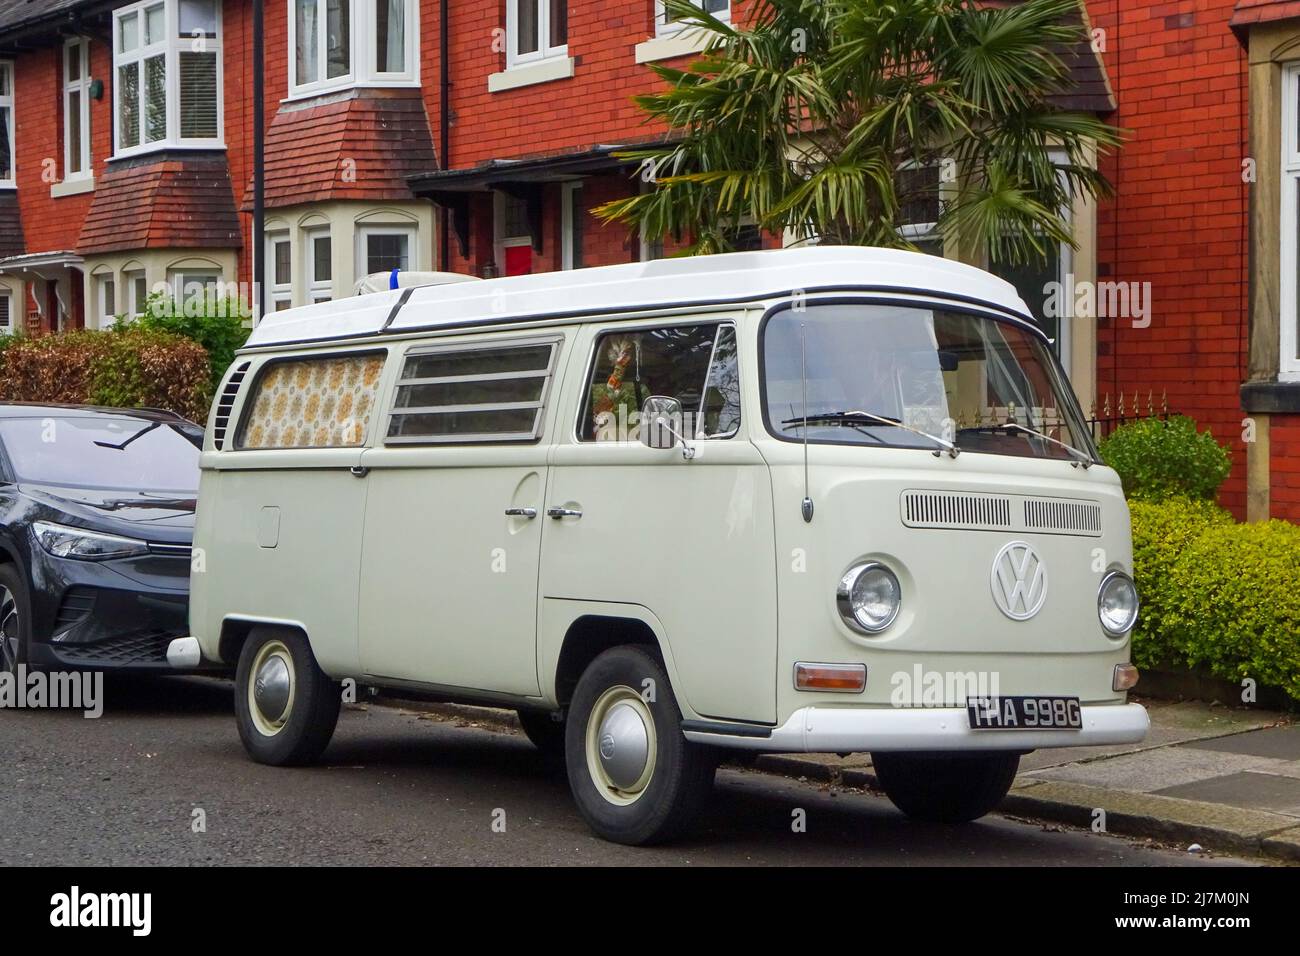 Ein Oldtimer-Wohnmobil von Volkswagen, der in einer Vorstadtstraße geparkt ist und den Lebensstil des Wohnwagens illustriert. Stockfoto